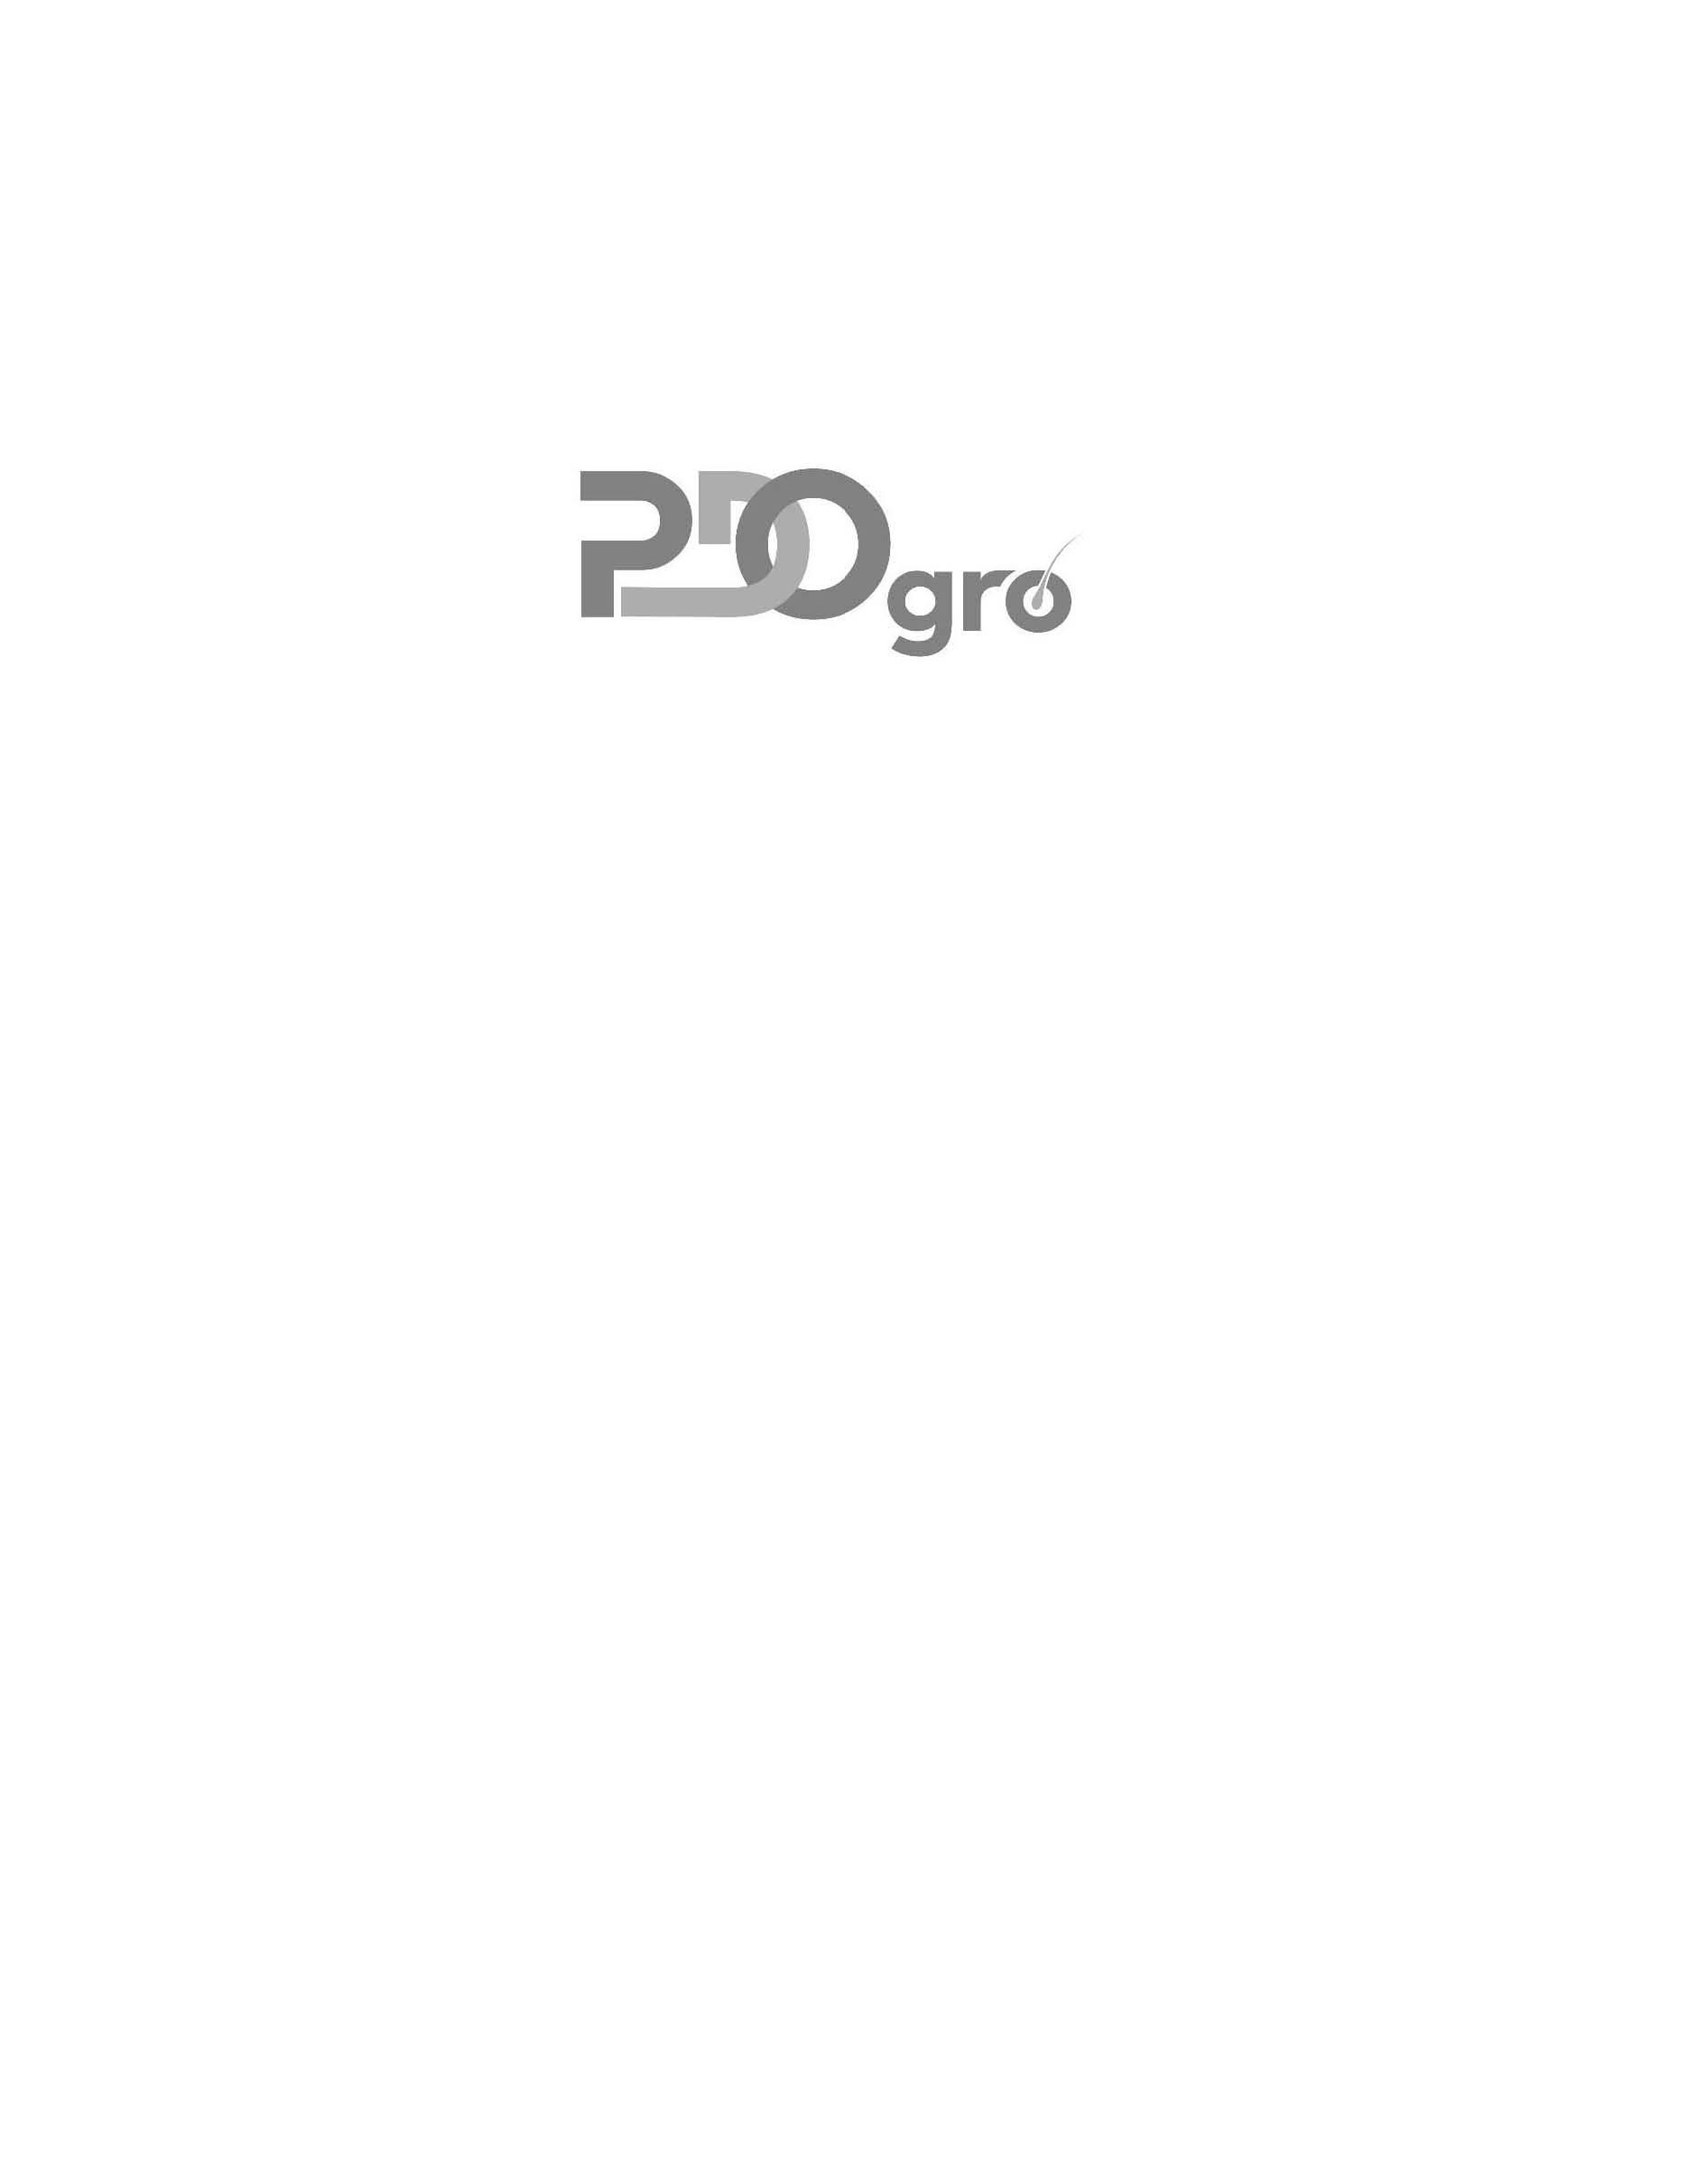 Trademark Logo PDO GRO